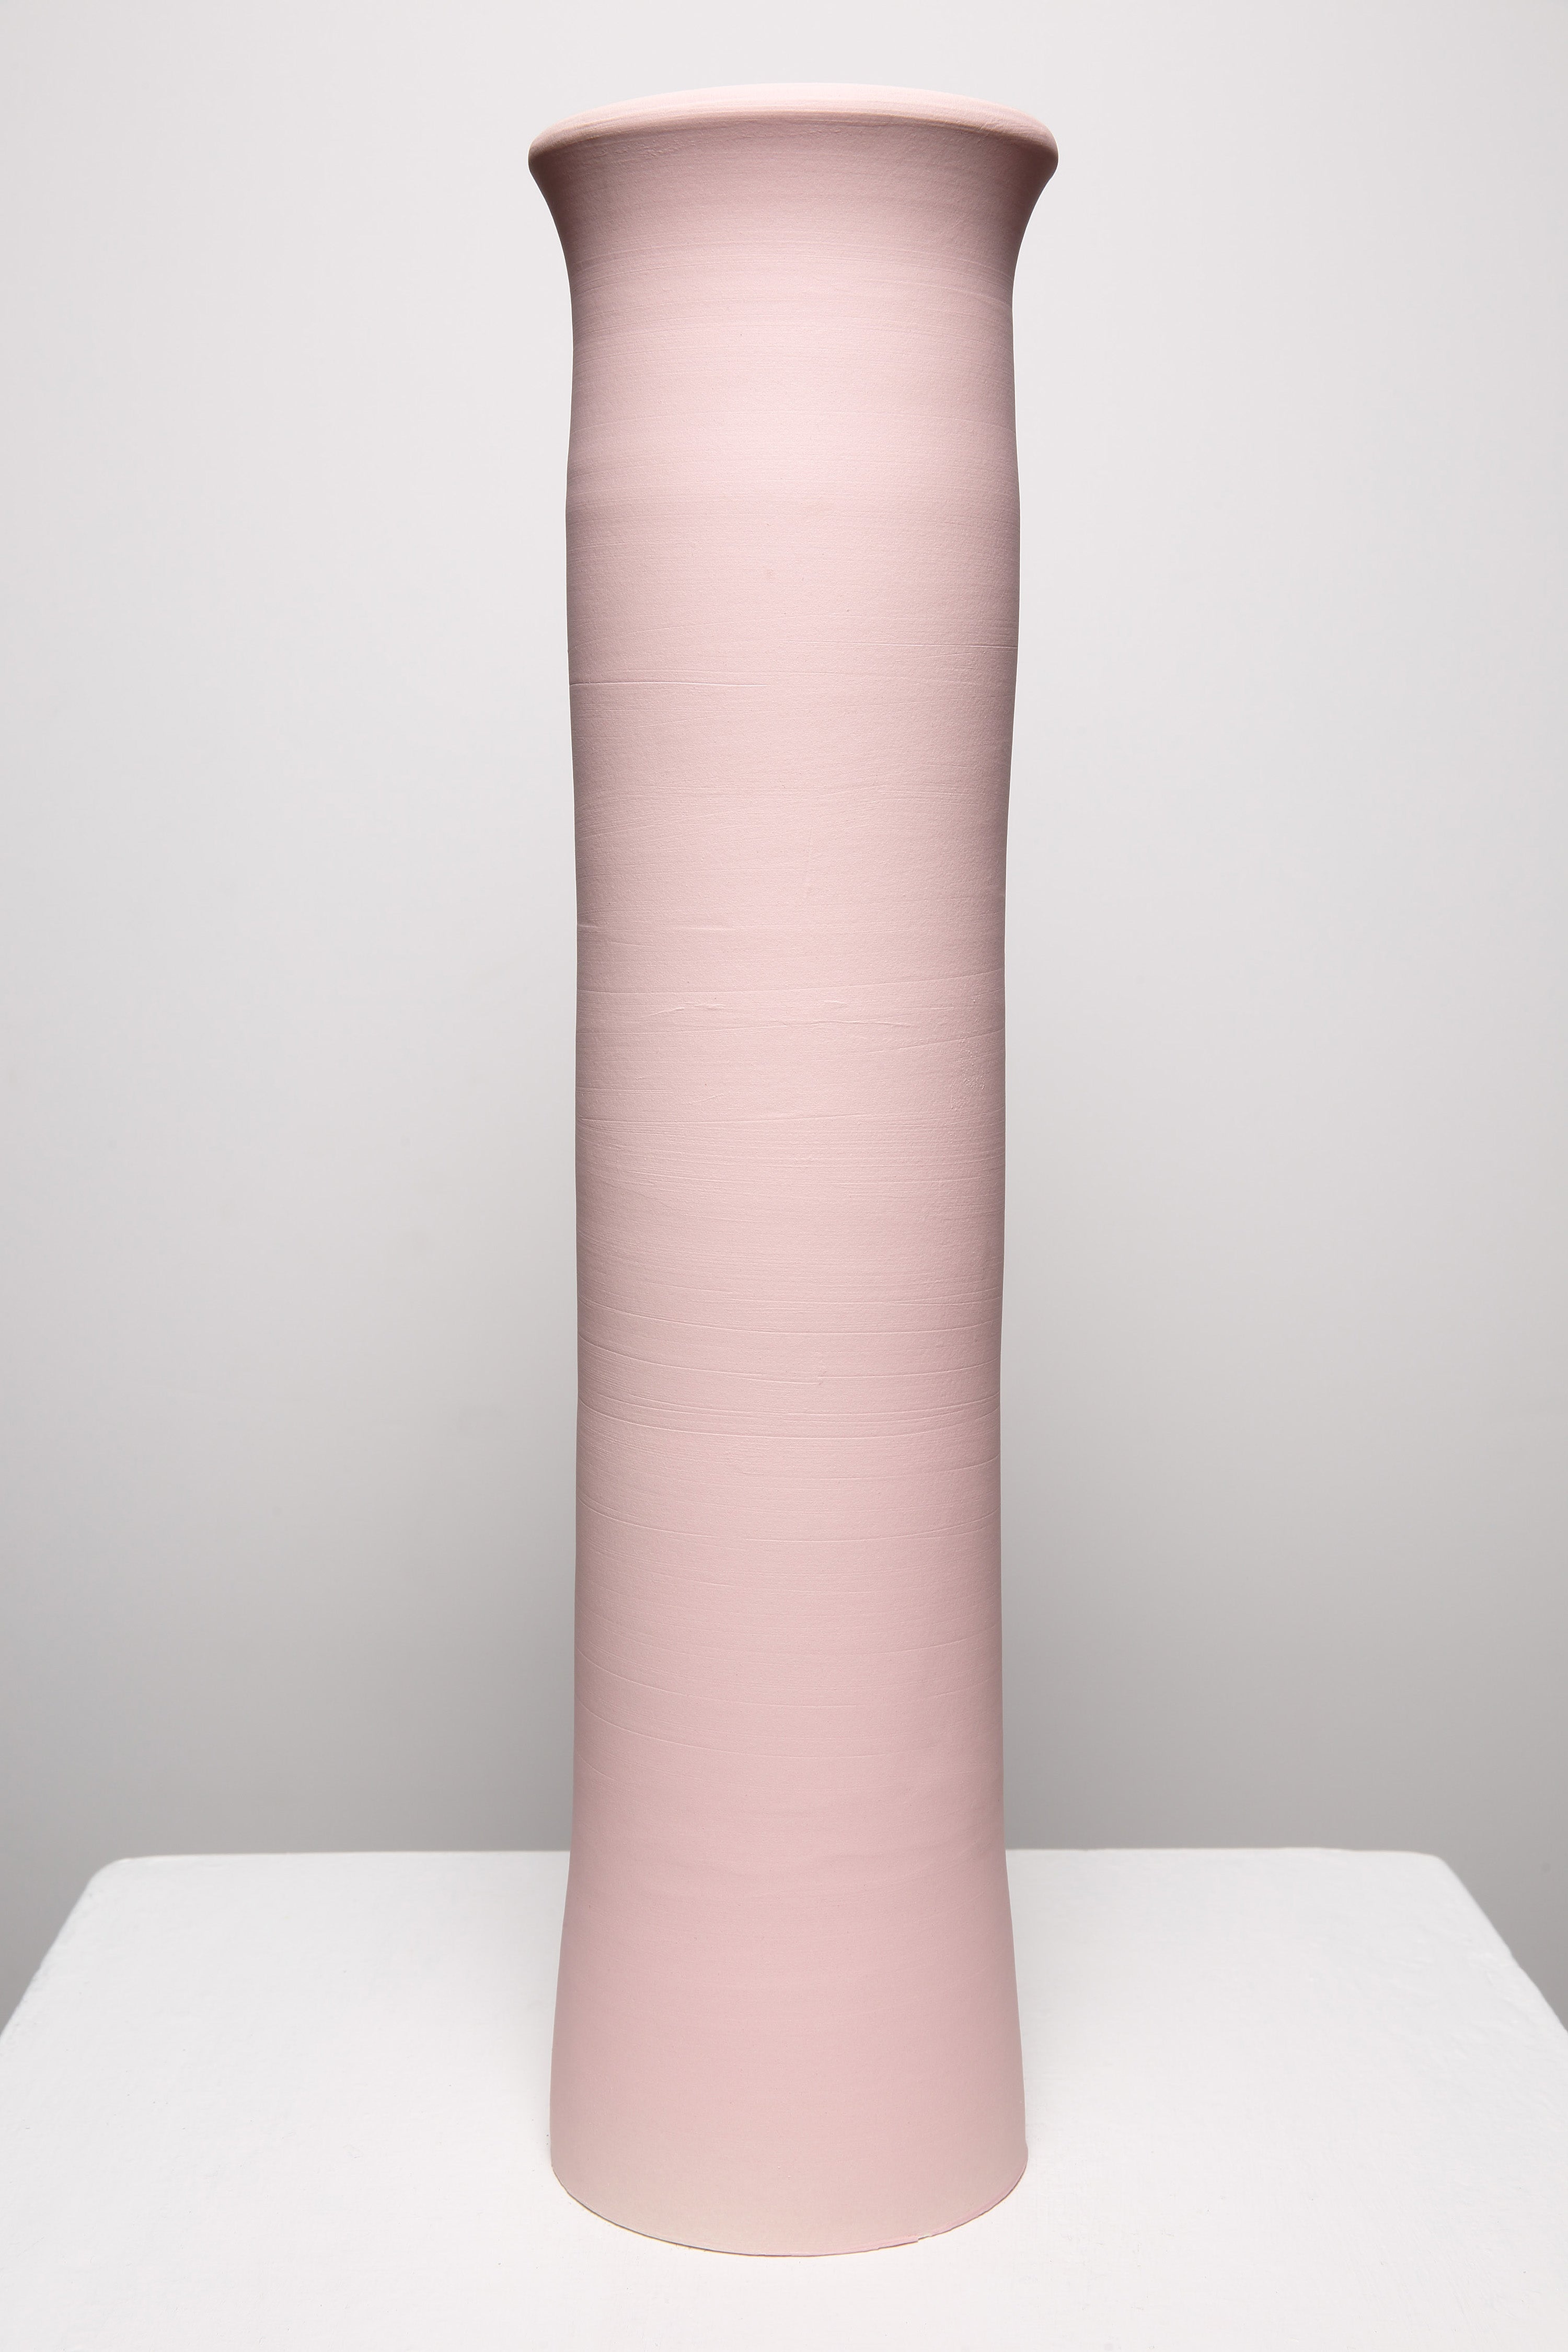 Matte Pink Wide Mouthed Majorelle Vase 232